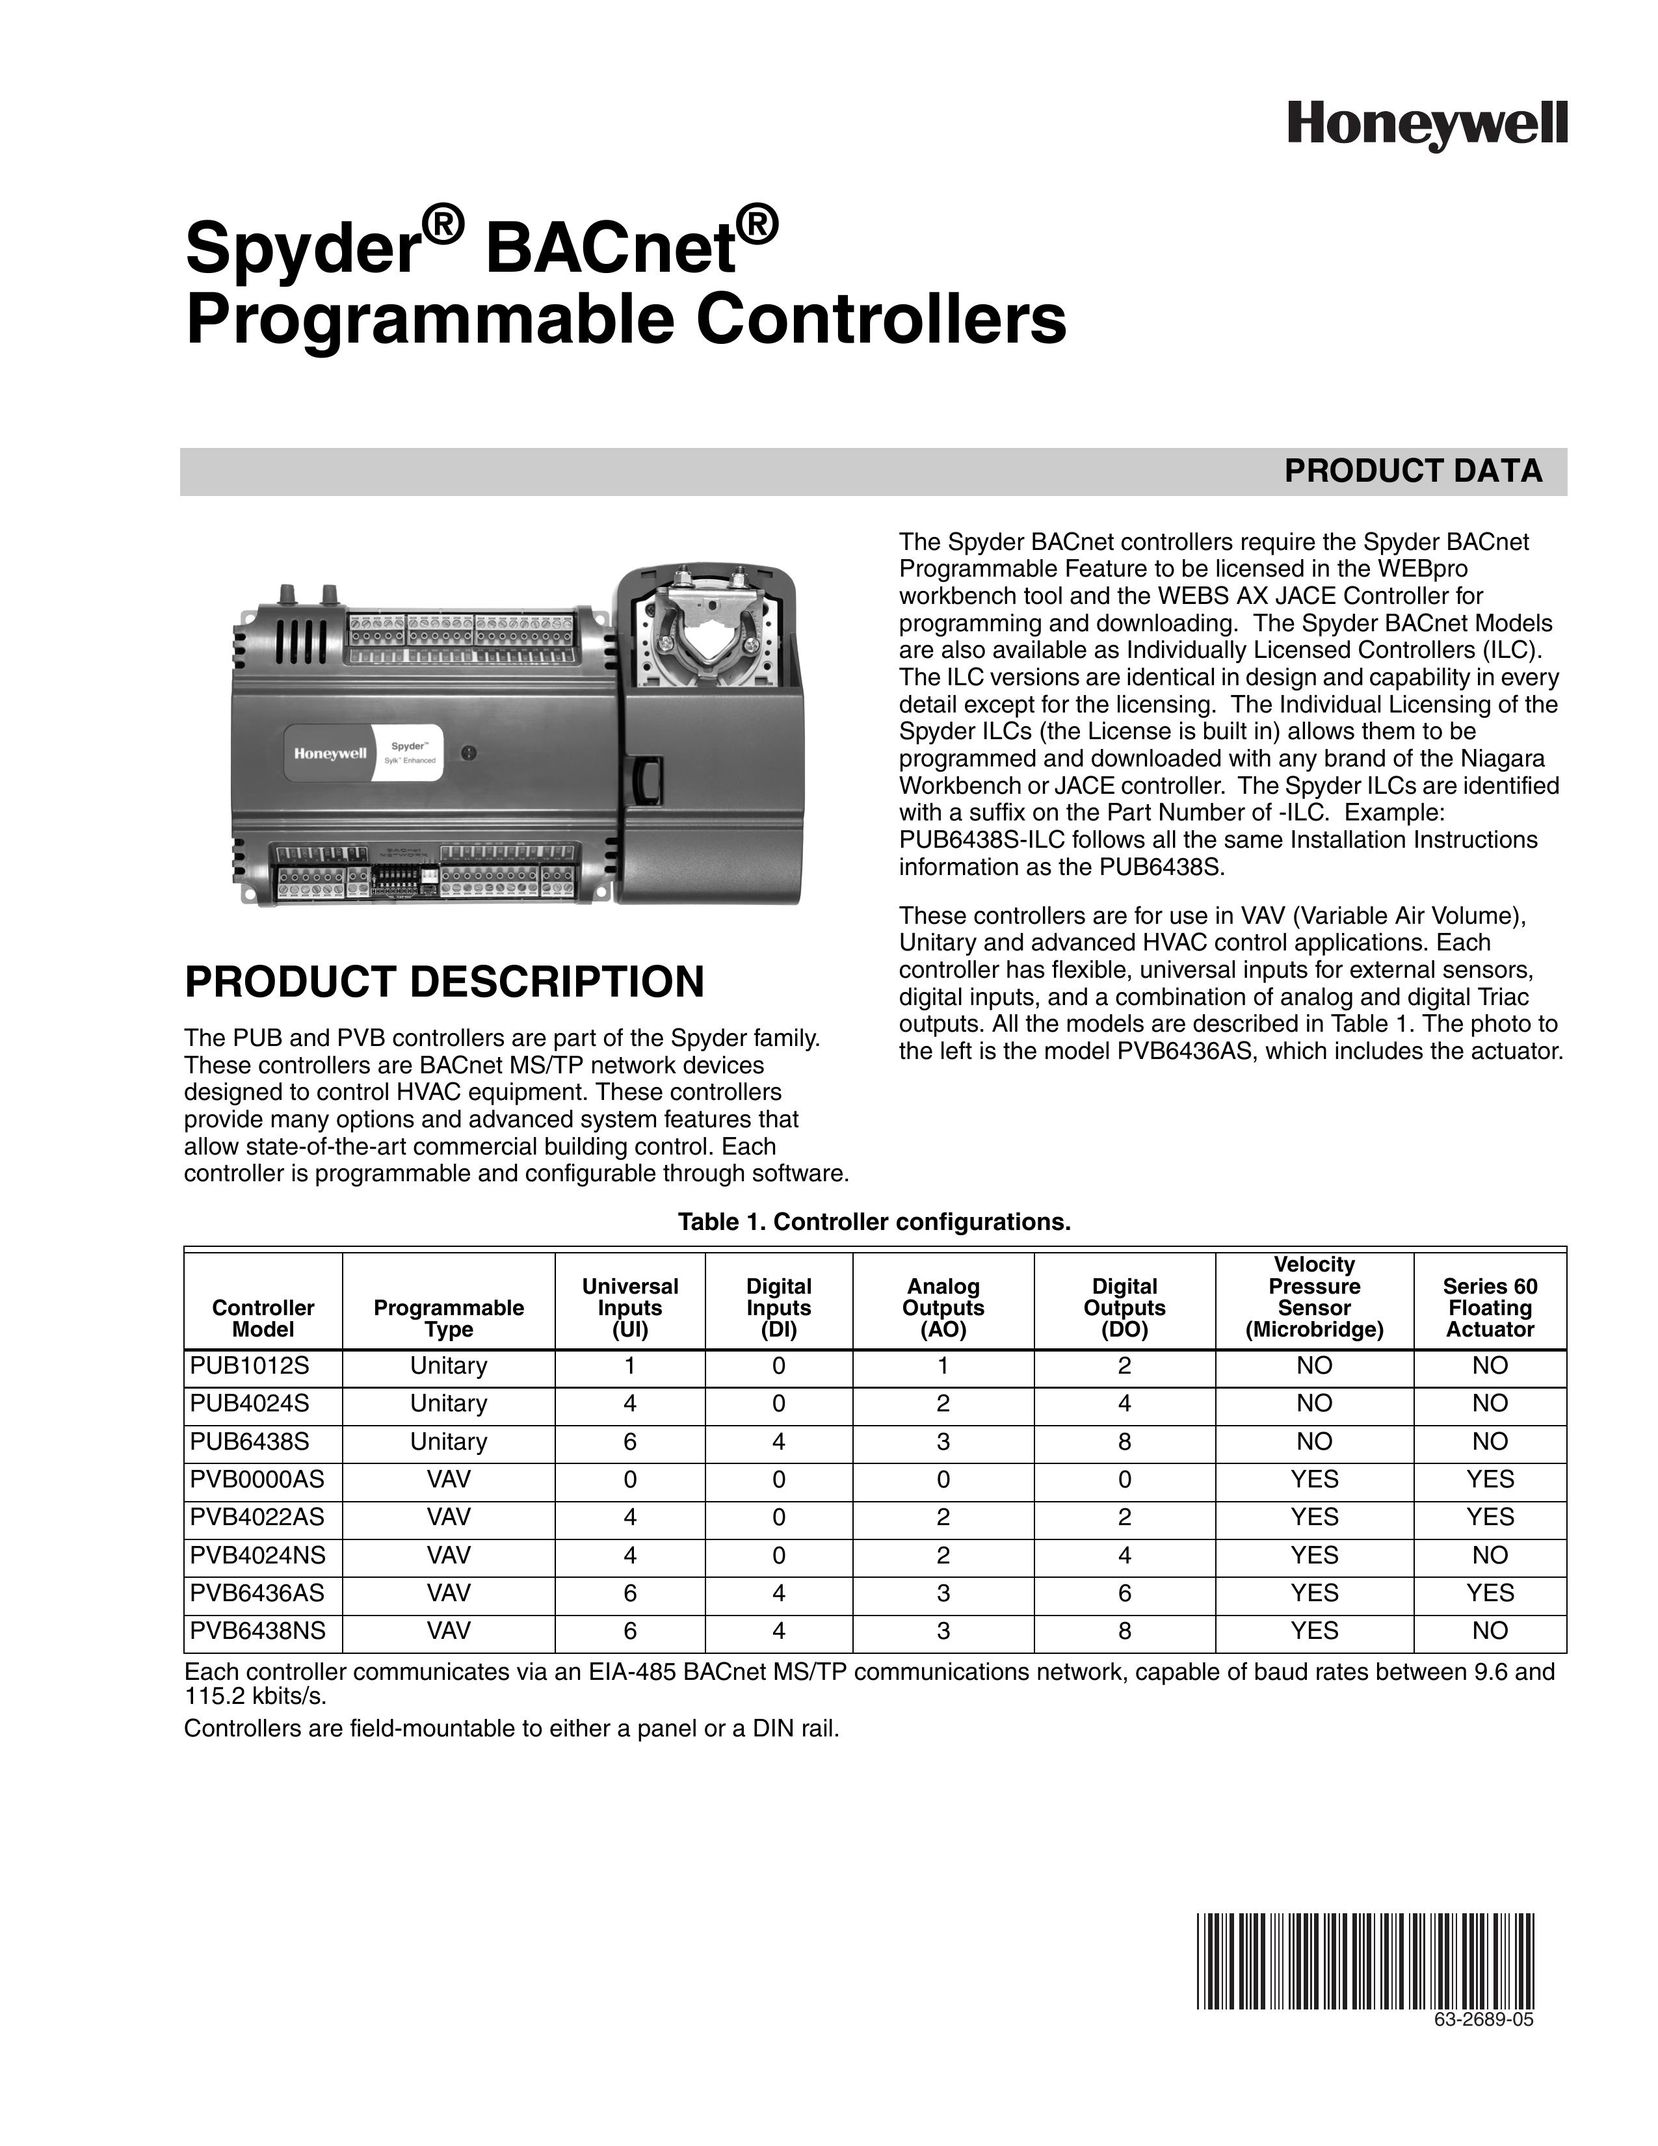 Honeywell PUB6438S Universal Remote User Manual